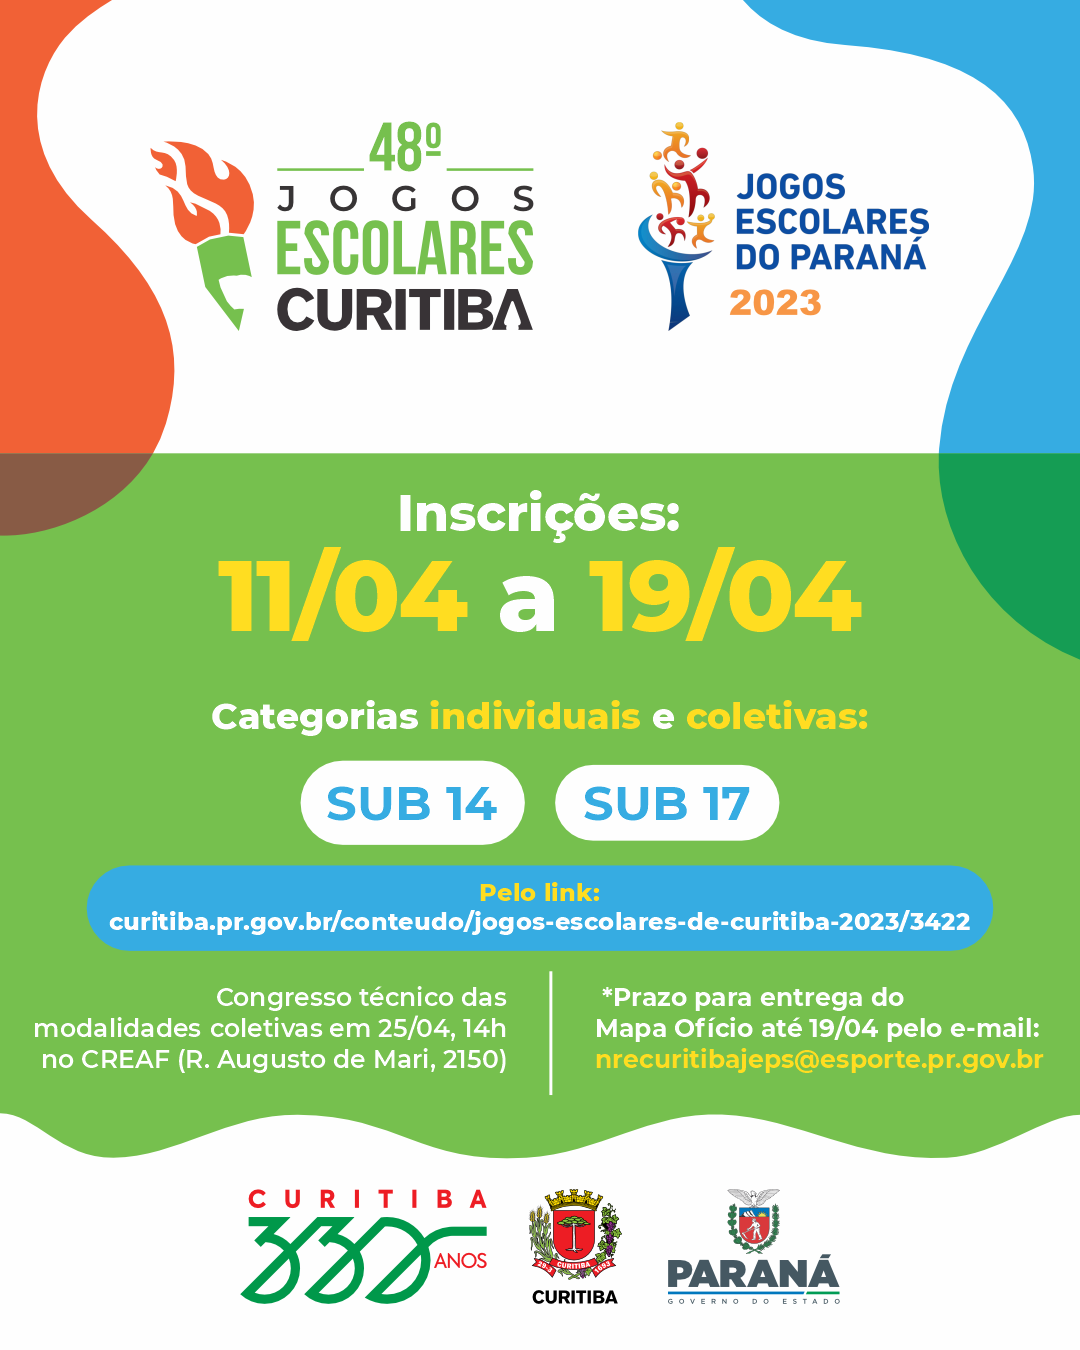 48 Jogos Escolares Curitiba / 69 Jogos Escolares do Paraná